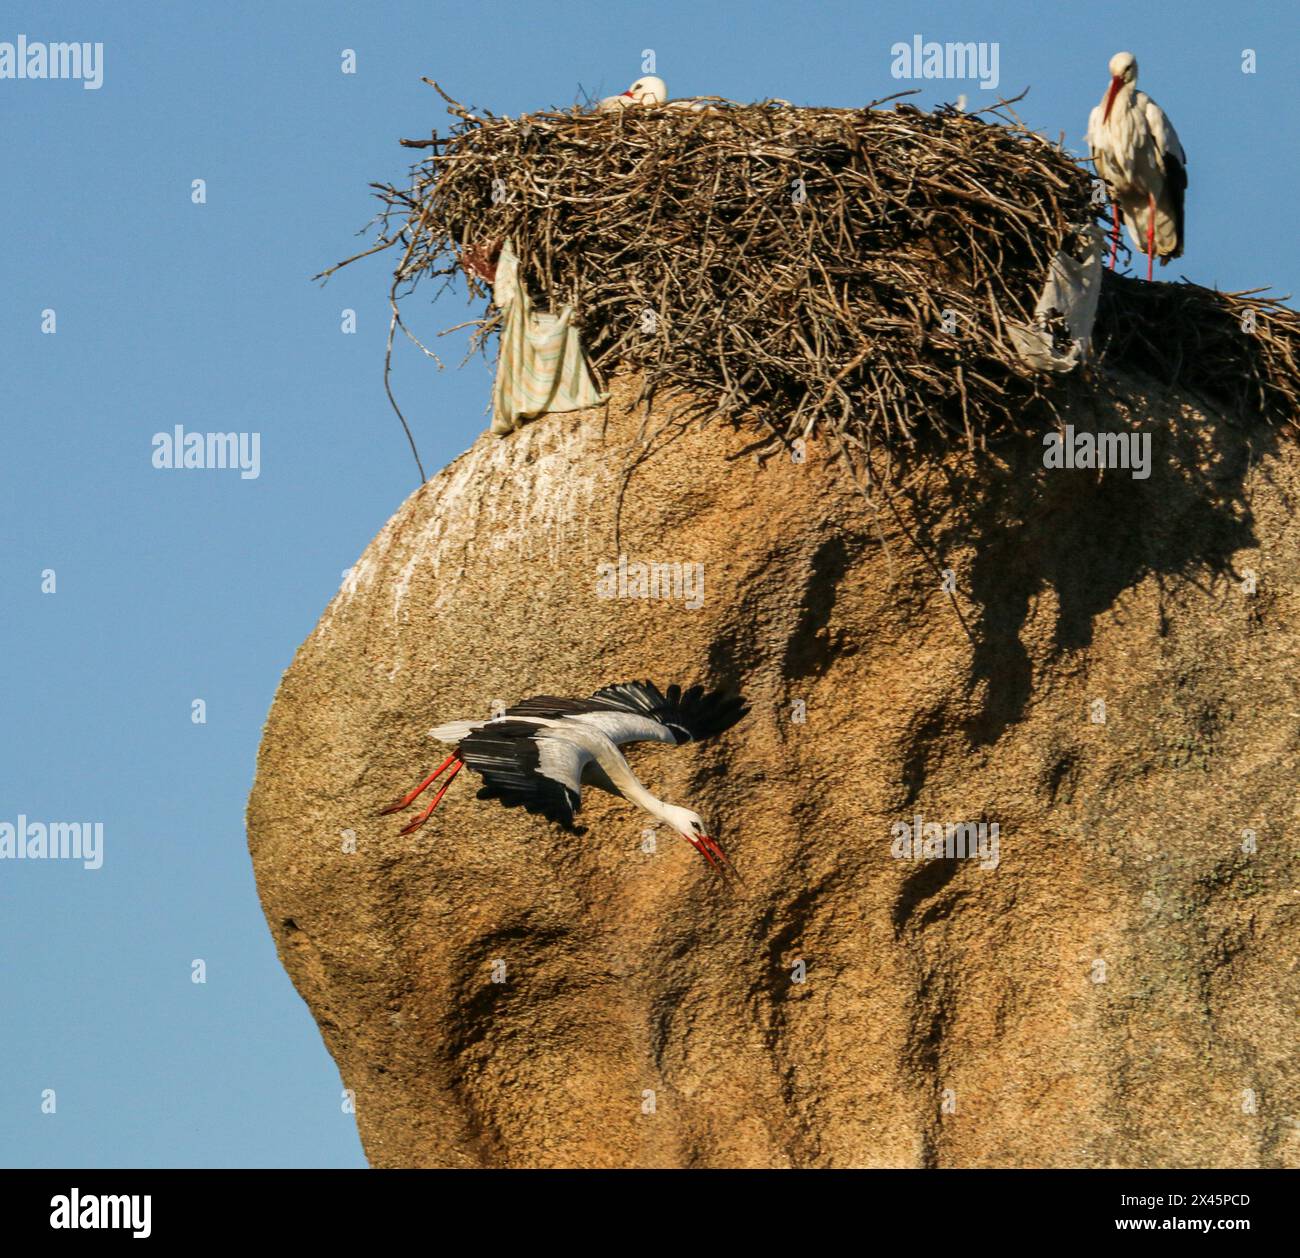 Cicogna bianca in volo di fronte a un nido fatto di rami e rifiuti, il Monumento naturale Los Barruecos, Estremadura, Spagna Foto Stock